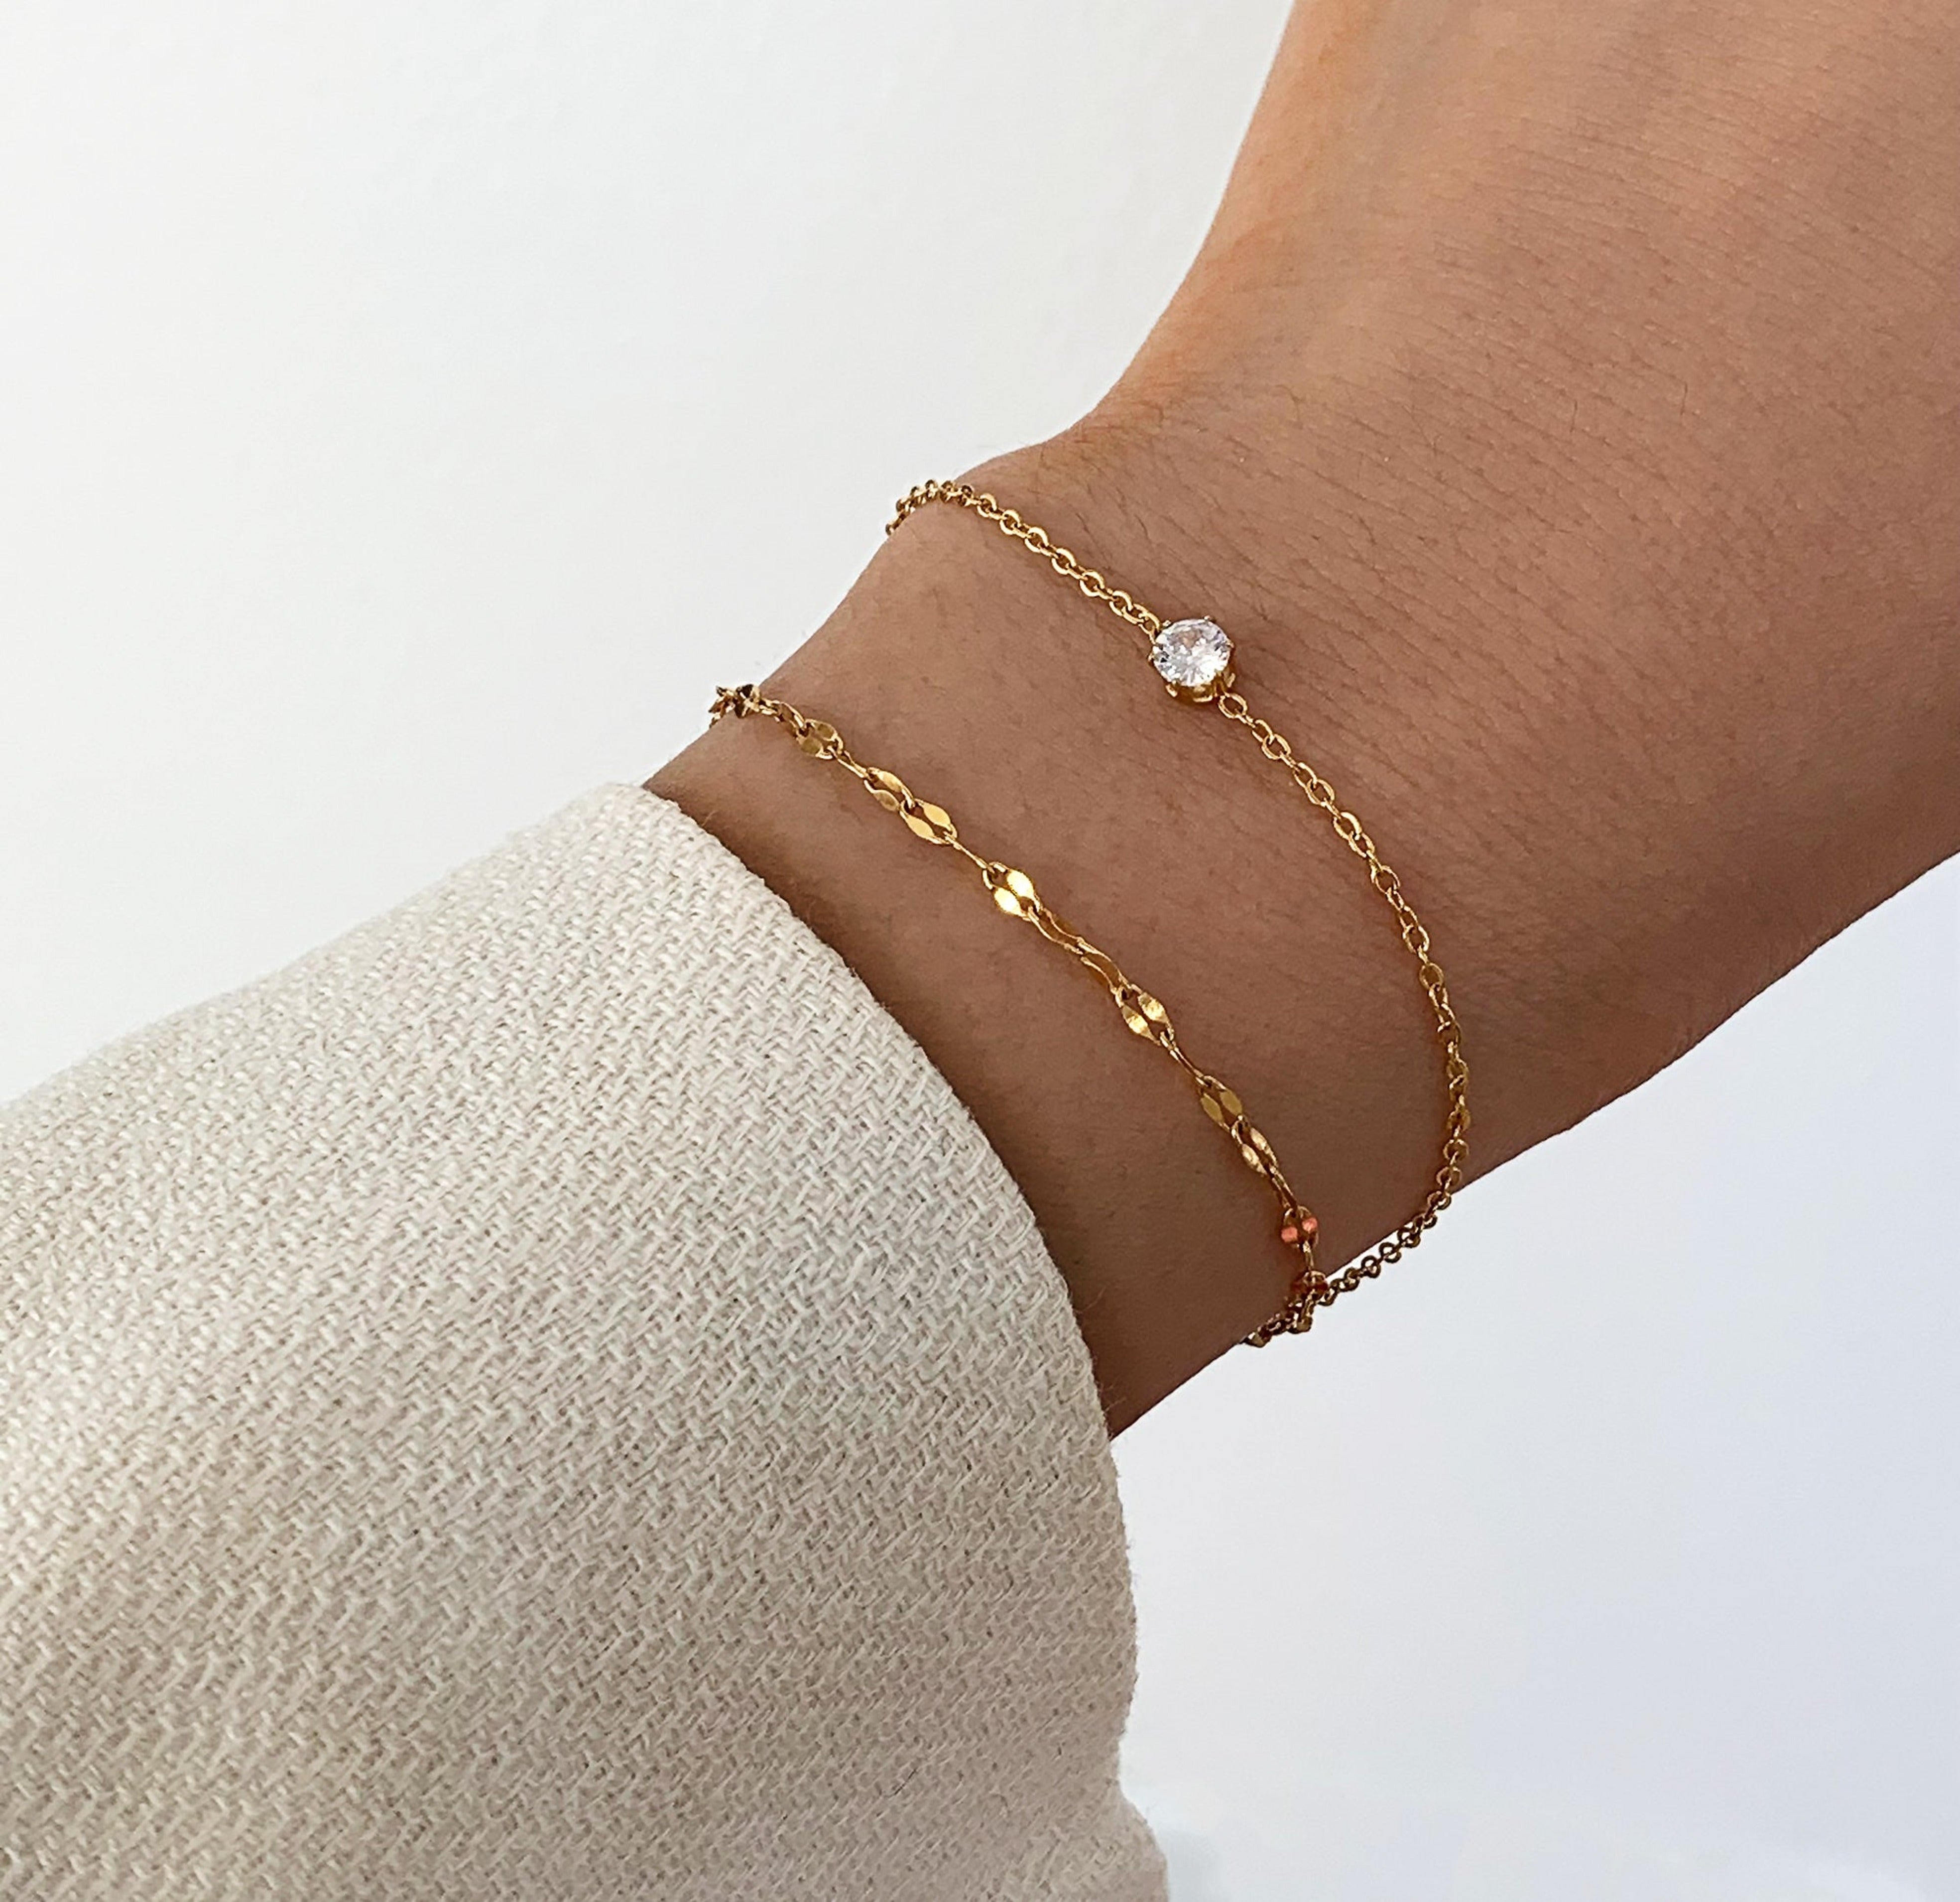 https://www.maidesiree.com/cdn/shop/products/dainty-double-stack-bracelet-waaterproof-jewelry-1.jpg?v=1641694215&width=3936